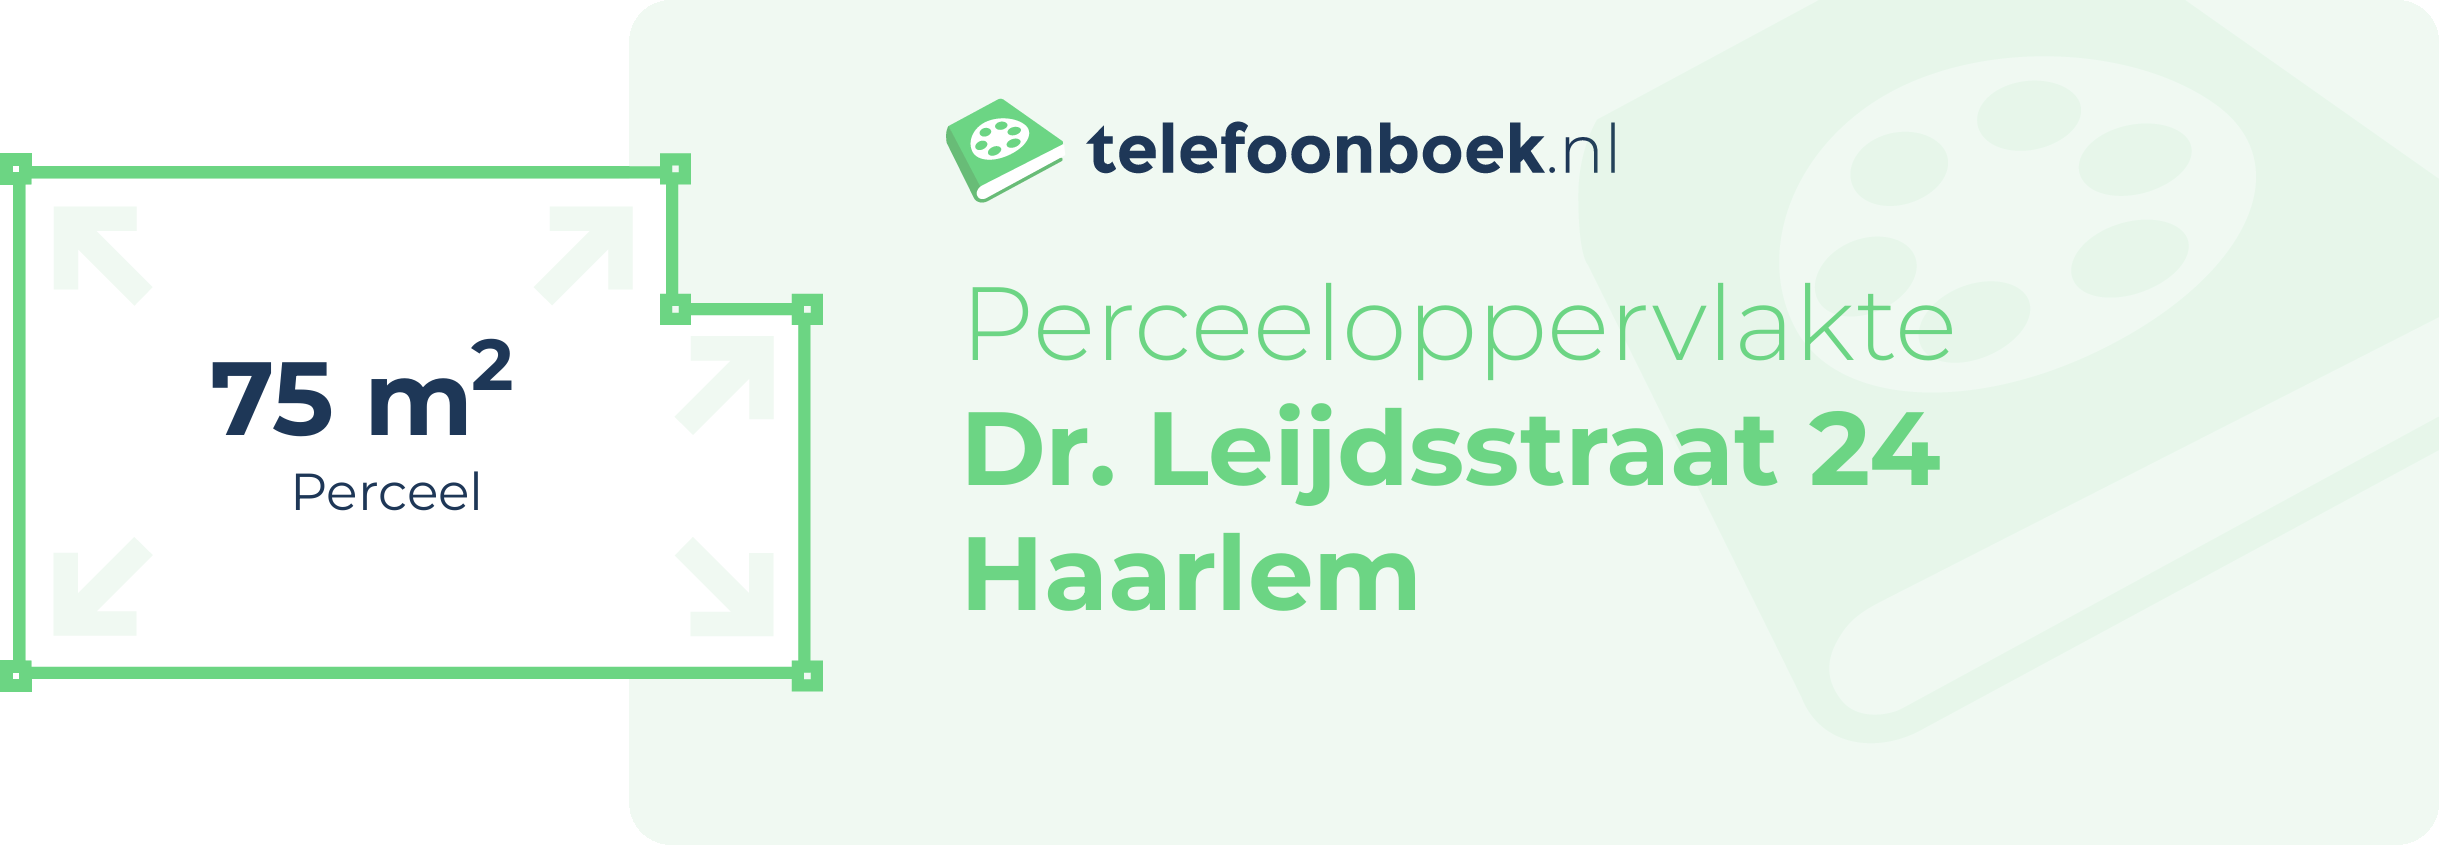 Perceeloppervlakte Dr. Leijdsstraat 24 Haarlem